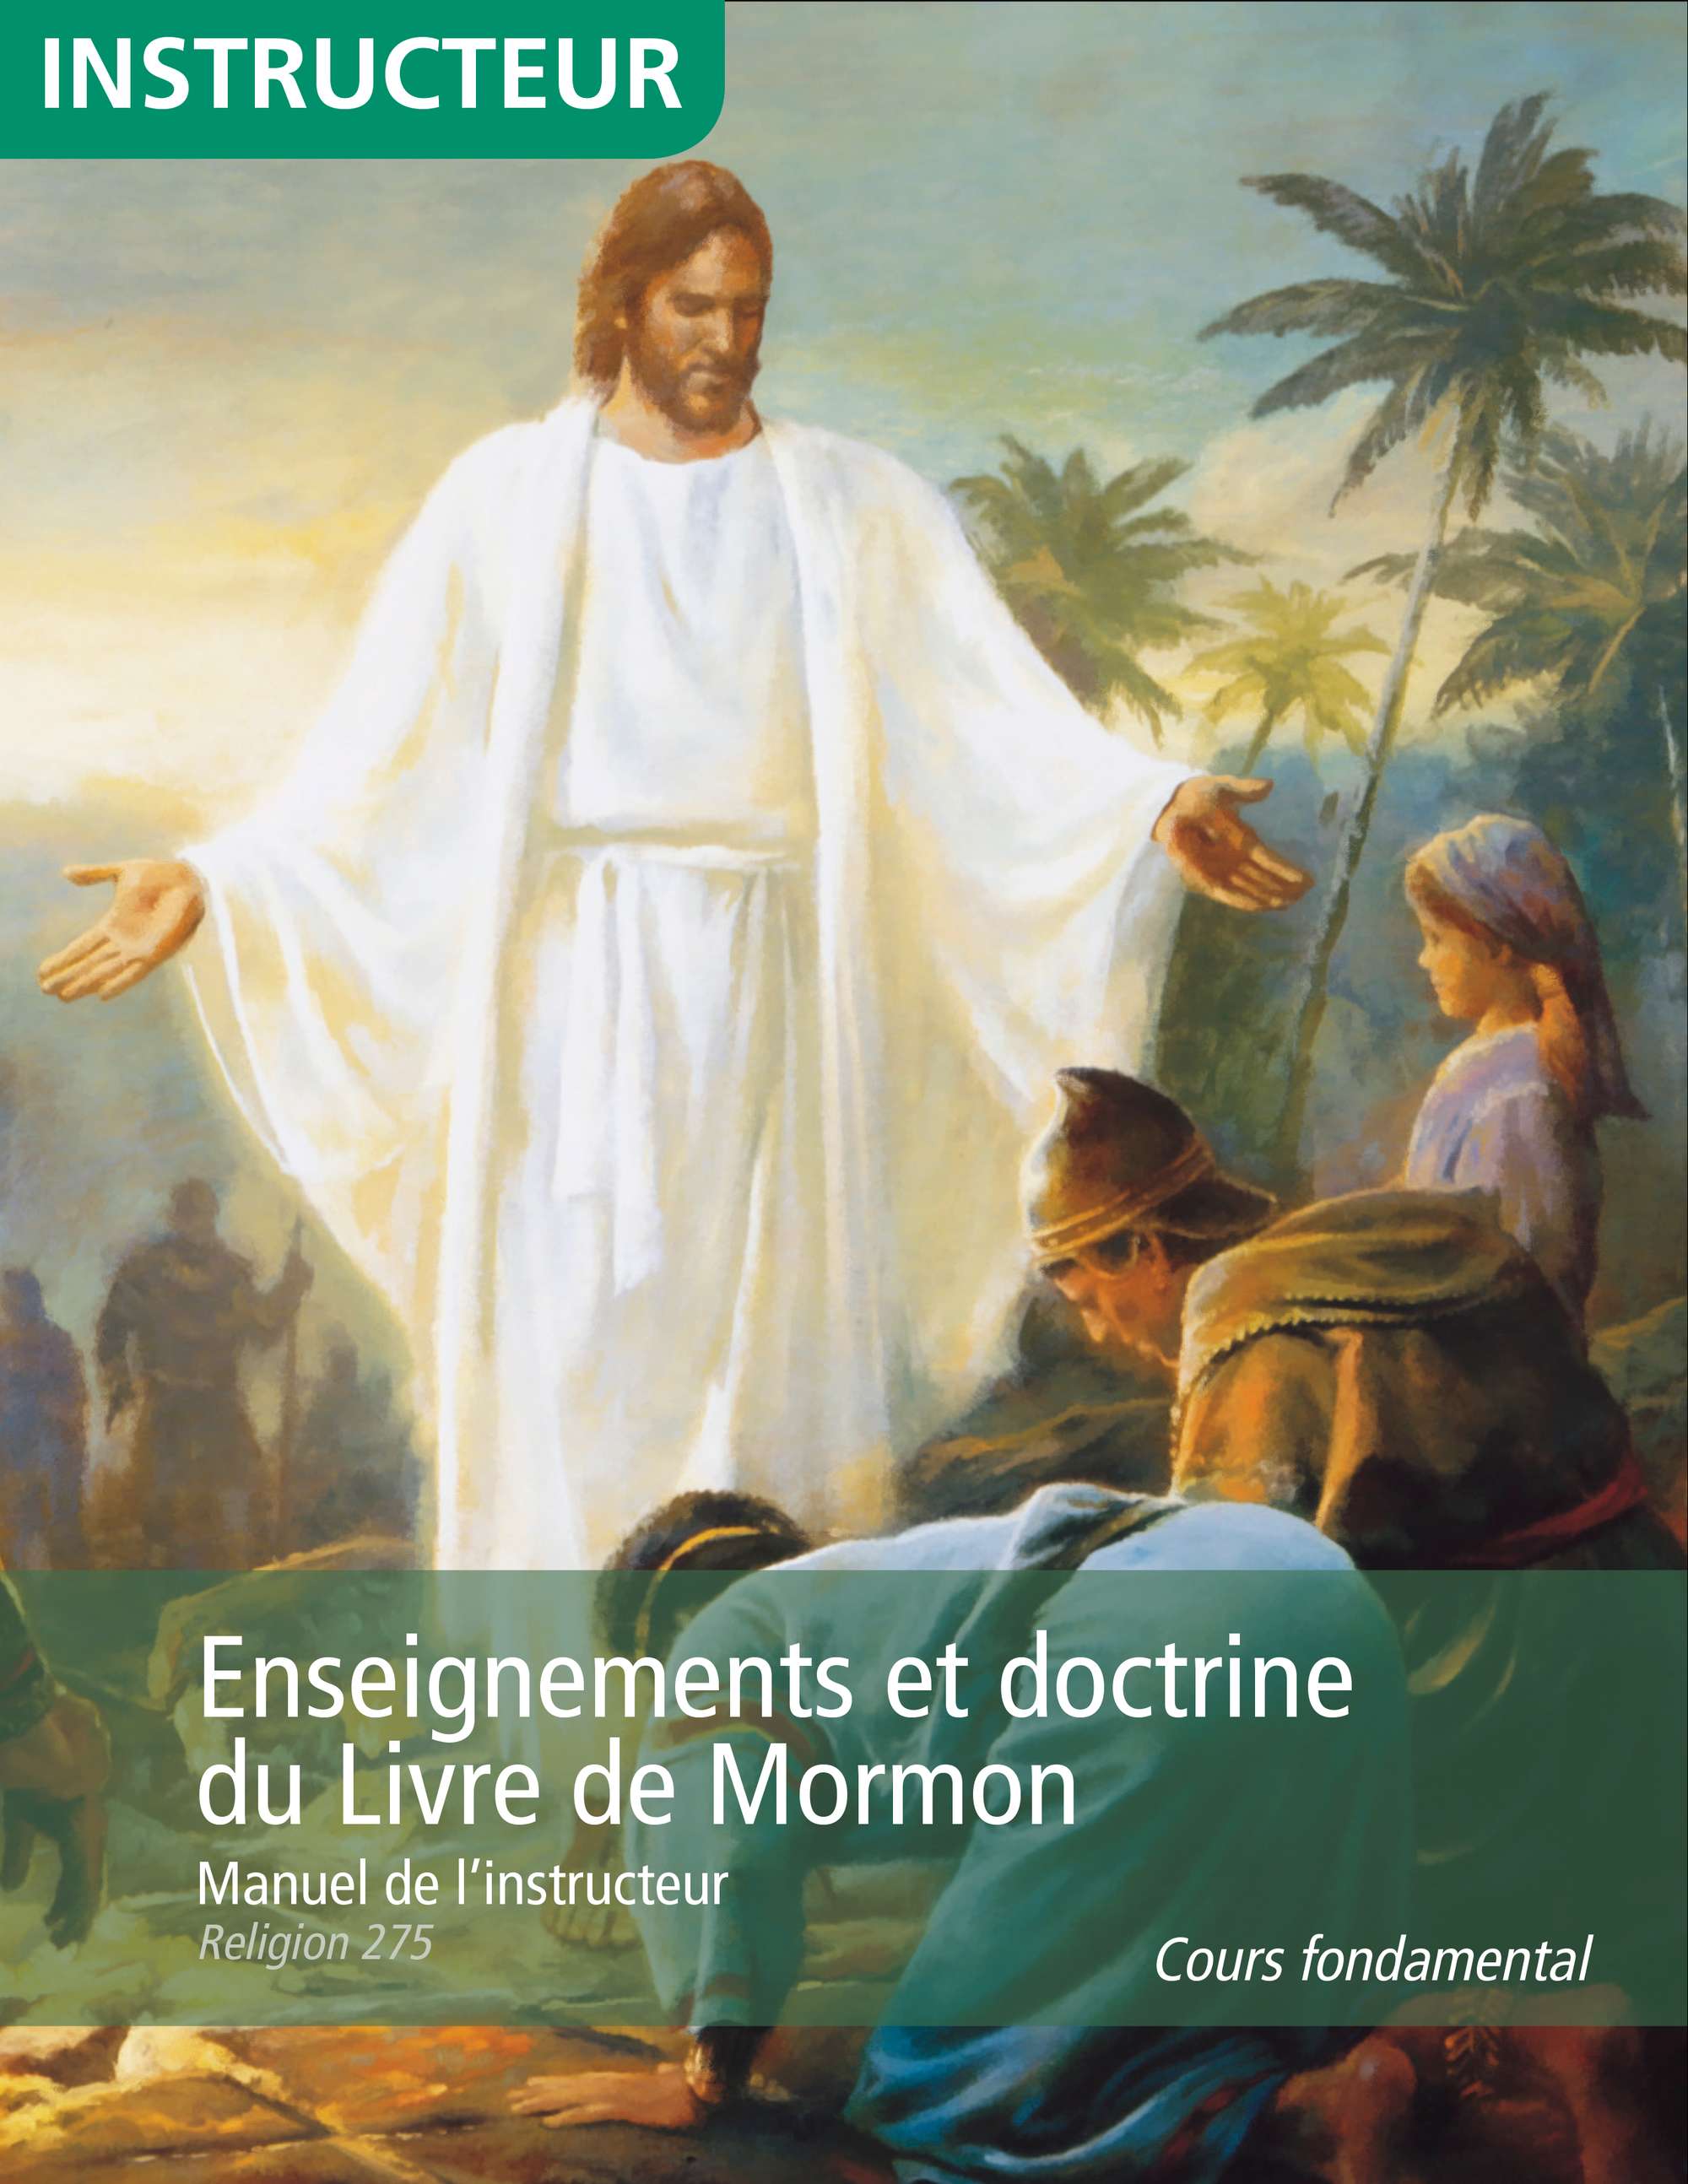 Enseignements et doctrine du Livre de Mormon, manuel de l’instructeur (Religion 275)